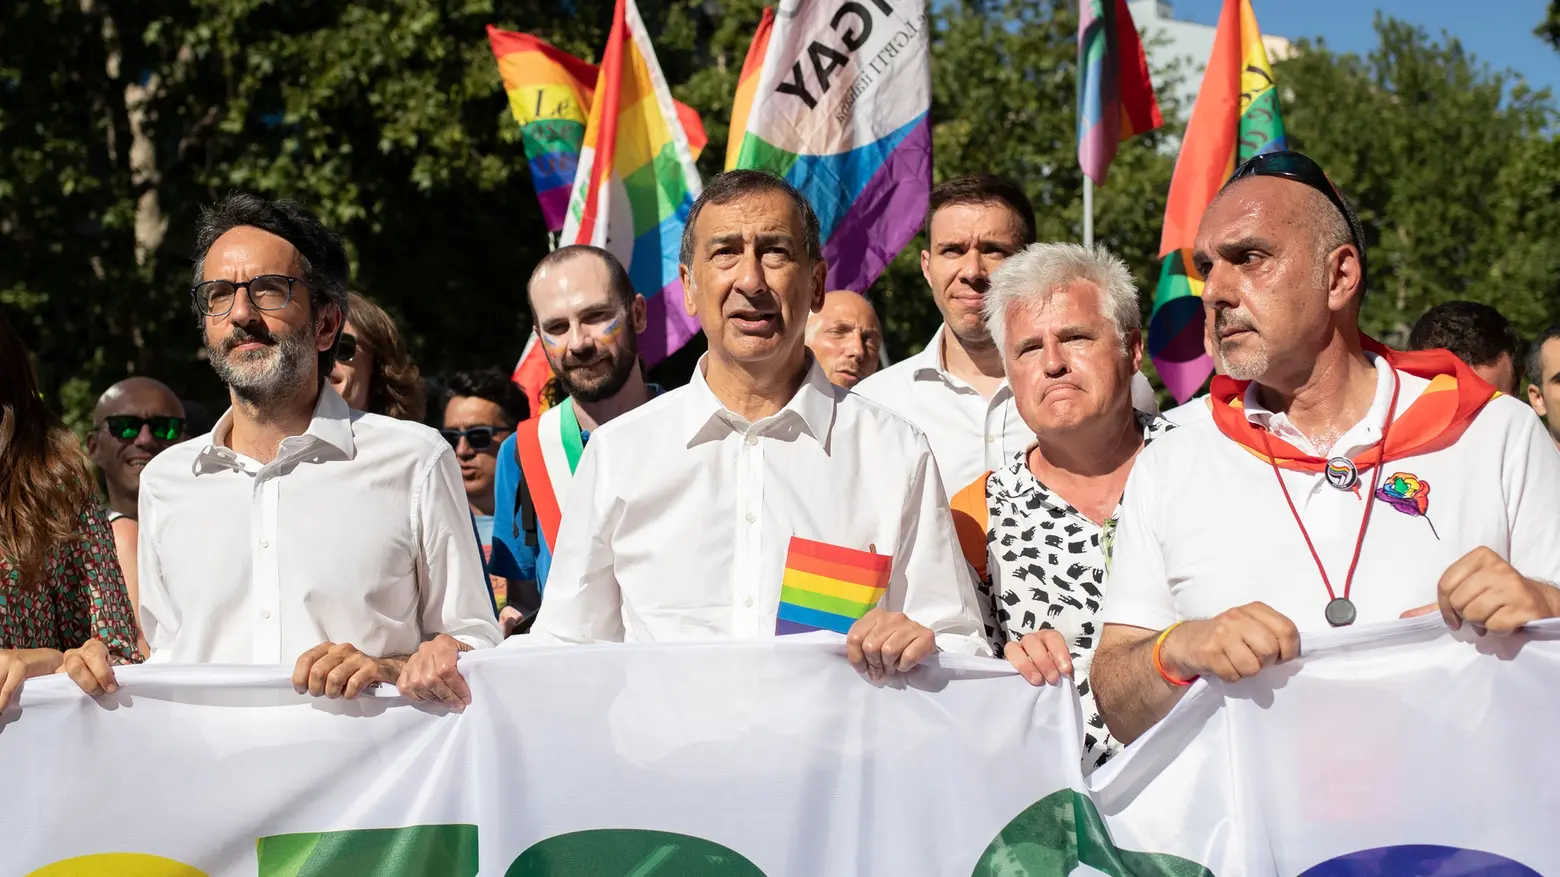 Figli delle coppie arcobaleno, Sala attacca il parlamento: “Serve una legge”